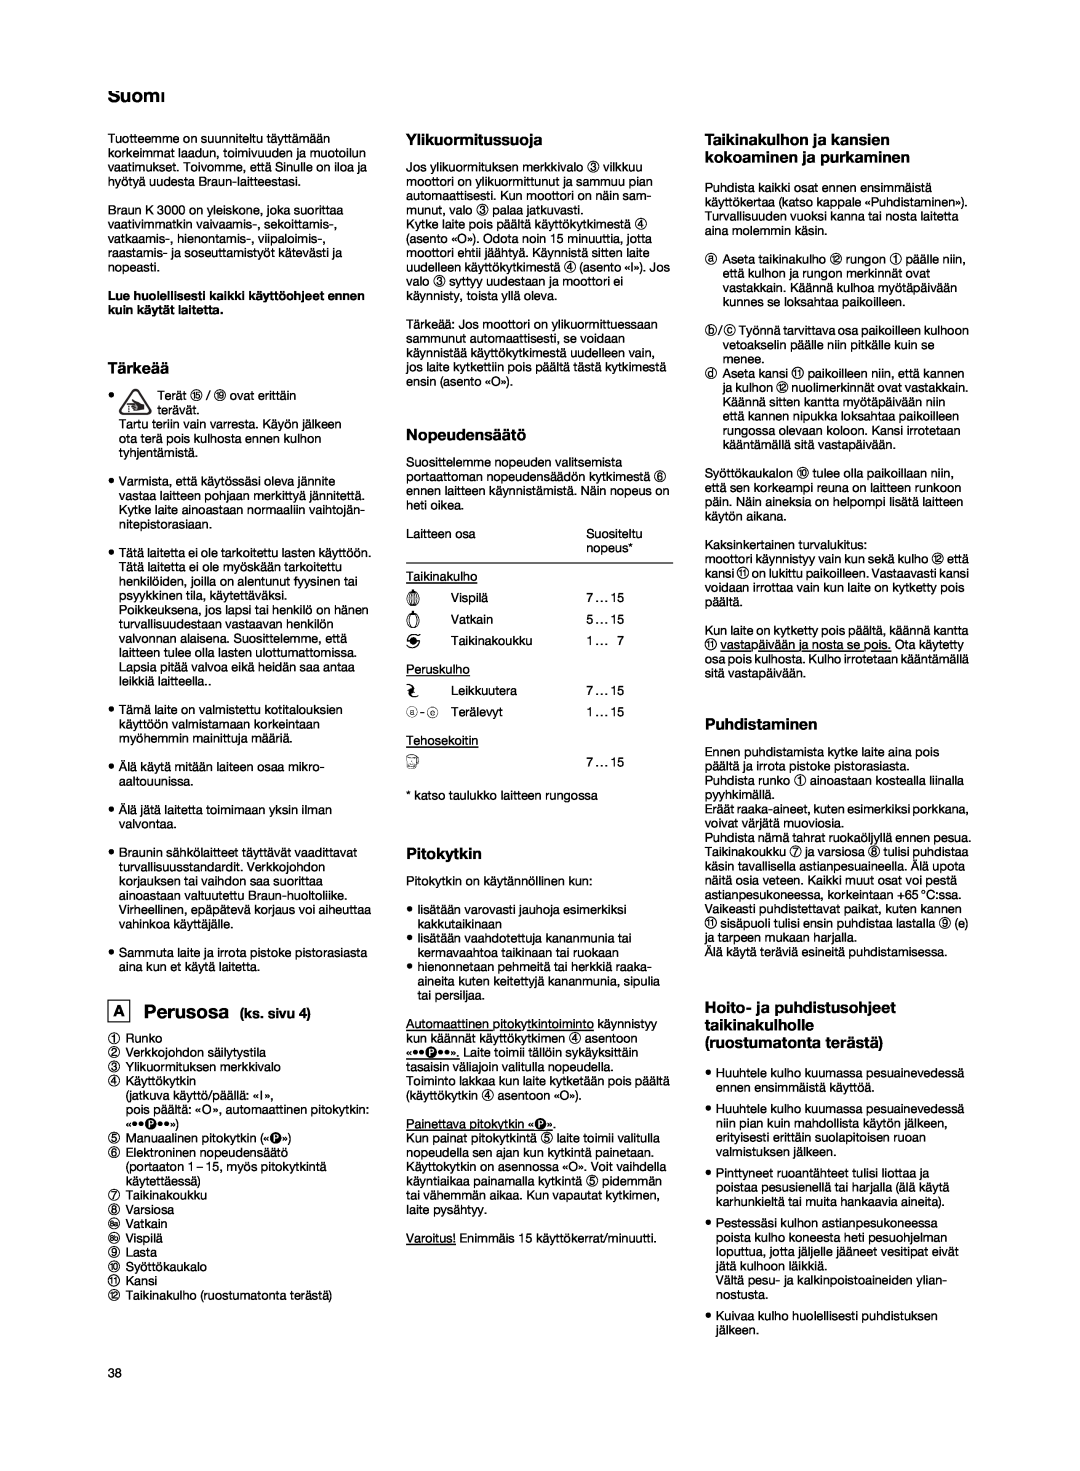 Braun K3000 manual Suomi, Tärkeää, Ylikuormitussuoja, Nopeudensäätö, Pitokytkin, Puhdistaminen, A Perusosa ks. sivu 